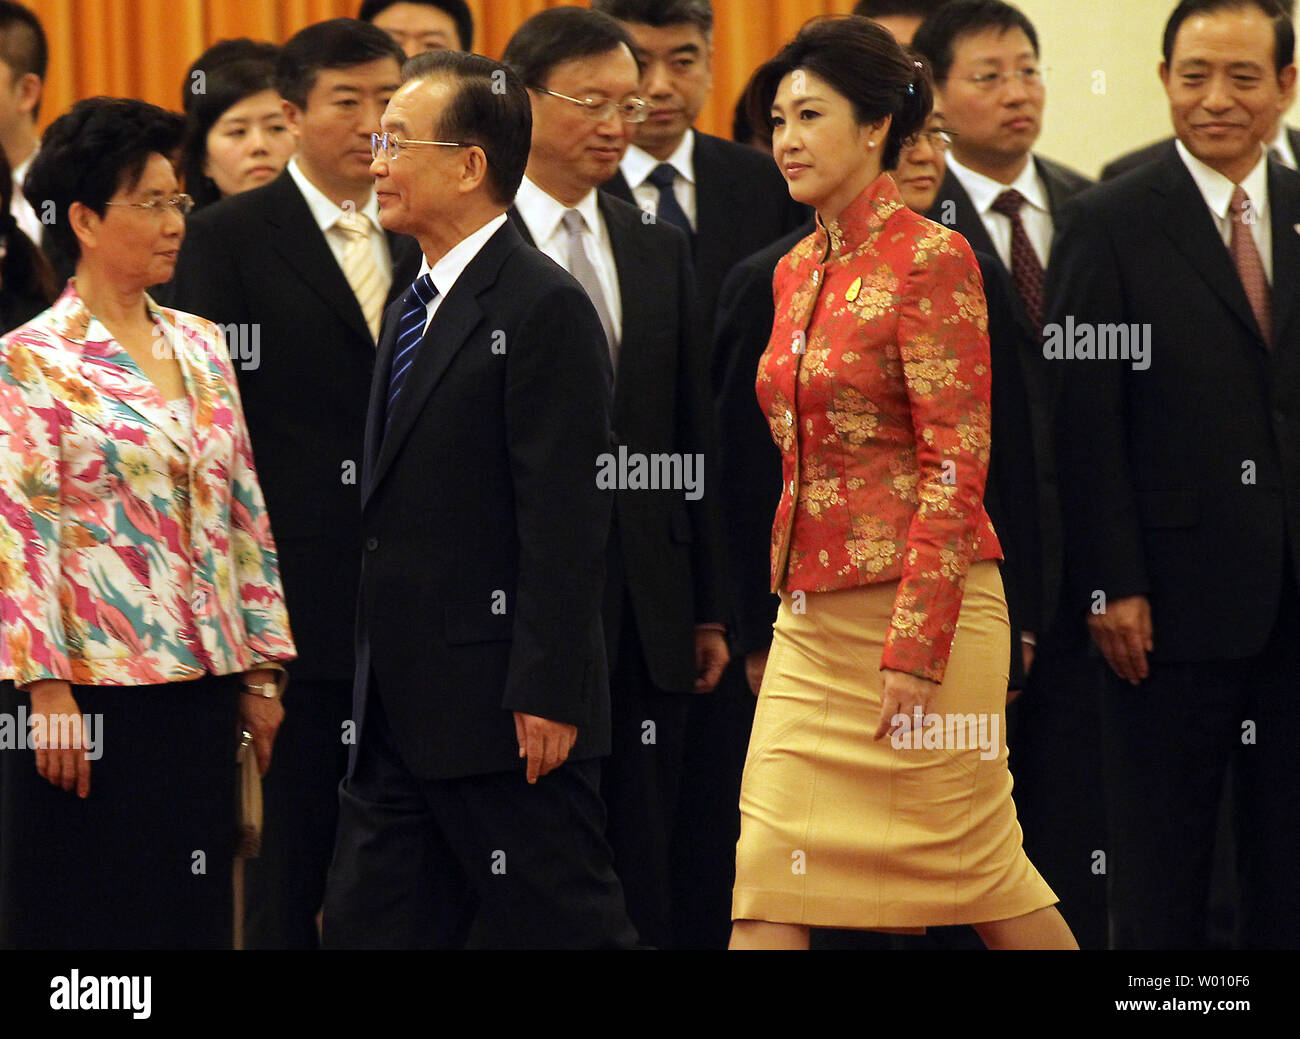 Der chinesische Ministerpräsident Wen Jiabao (L) Escorts thailändischen Premierminister Yingluck Shinawatra Vergangenheit chinesische Regierung Kabinett Mitglieder während der Begrüßungszeremonie in der Großen Halle des Volkes in Peking vom 17. April 2012. Shinawatra führt eine 100-köpfige Wirtschaftsdelegation nach China für Gespräche auf höchster Ebene auf die Stärkung der handelspolitischen Beziehungen. China bleibt Thailands größte Exportmarkt und der zweitgrößte Quelle der Einfuhren. UPI/Stephen Rasierer Stockfoto